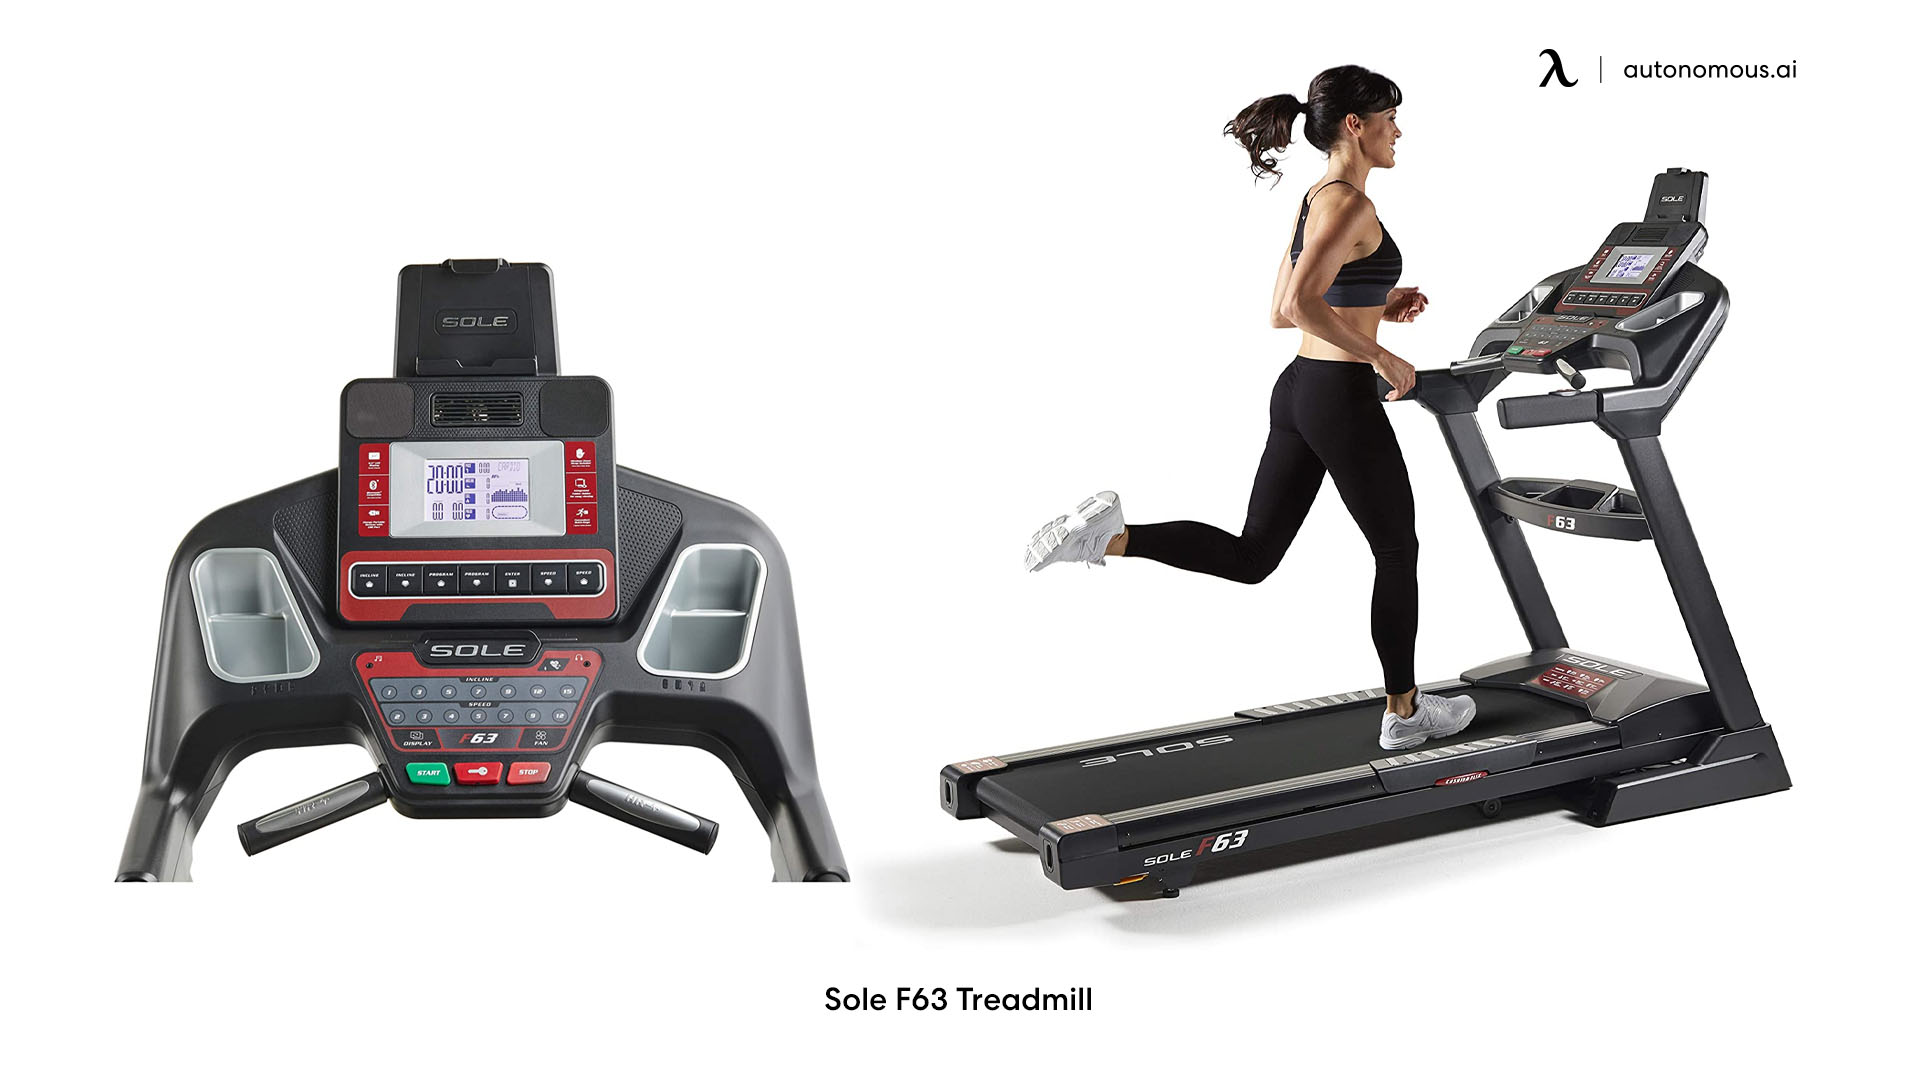 Sole F63 small walking treadmill